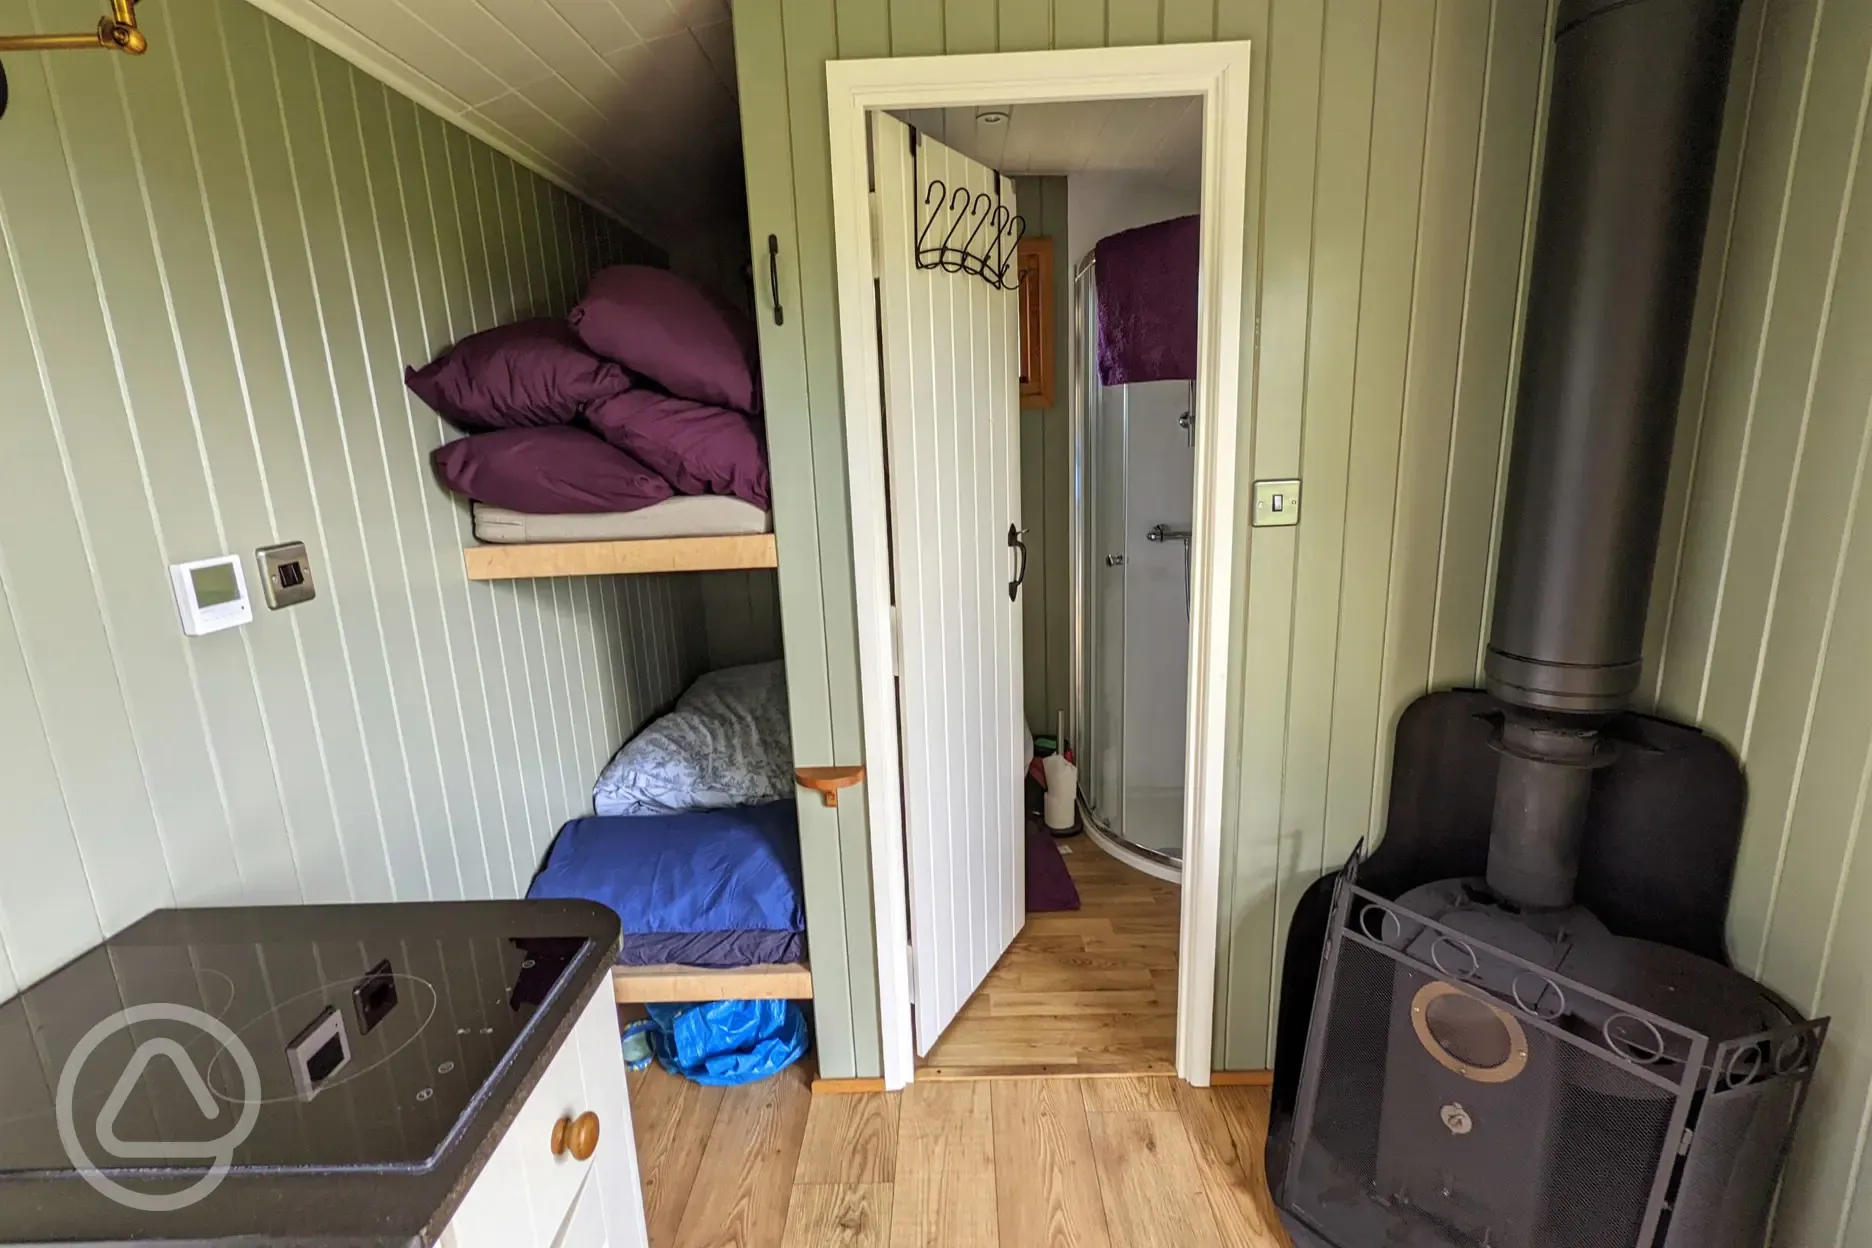 Nain hut bunk beds and bathroom June 22